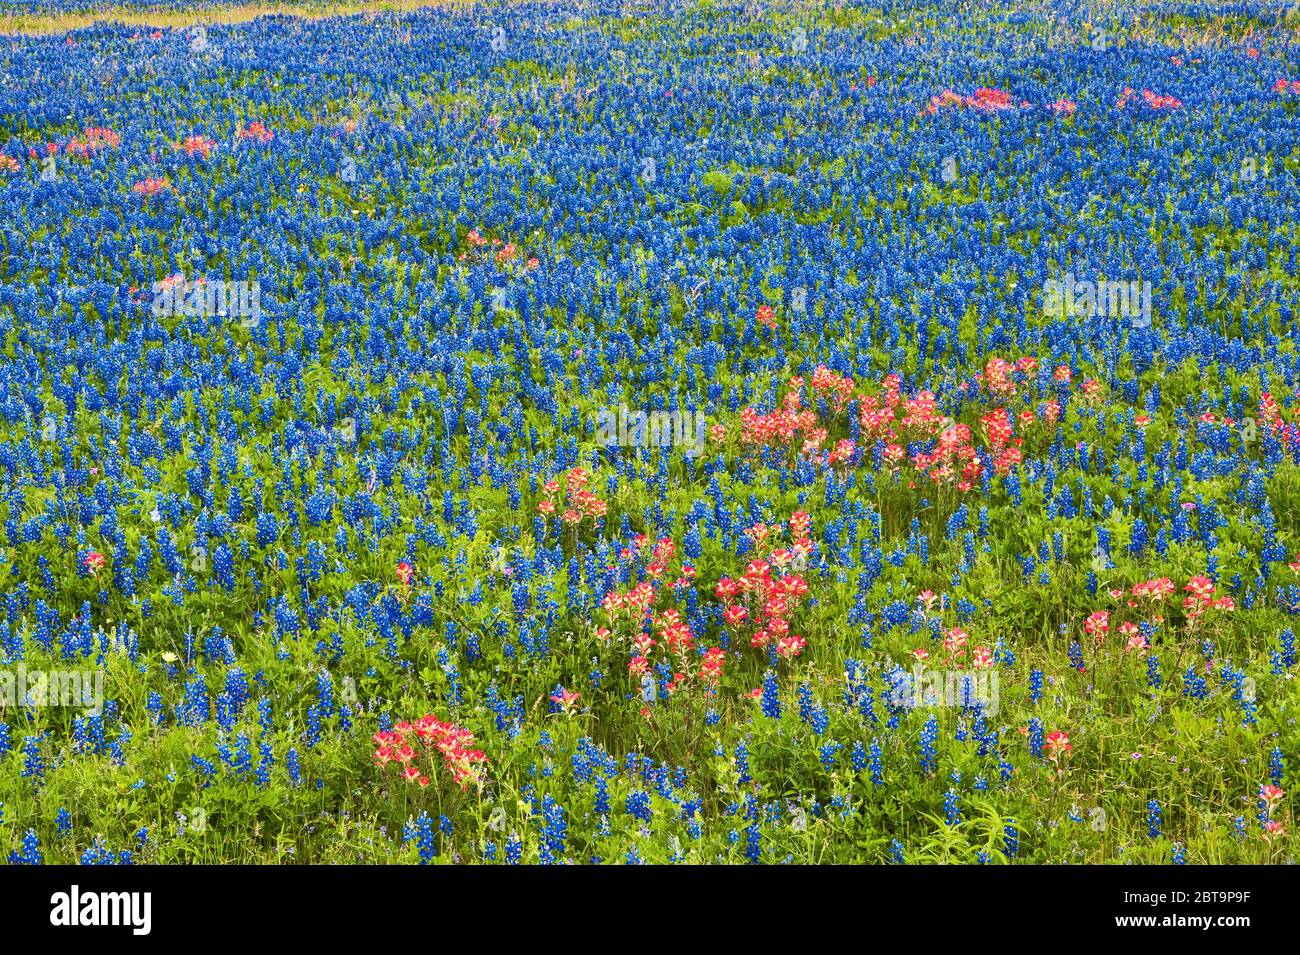 Champ de bluebonnets et fleurs sauvages de pinceaux indiens au bord de la route au printemps, près de Helena, Texas, États-Unis Banque D'Images